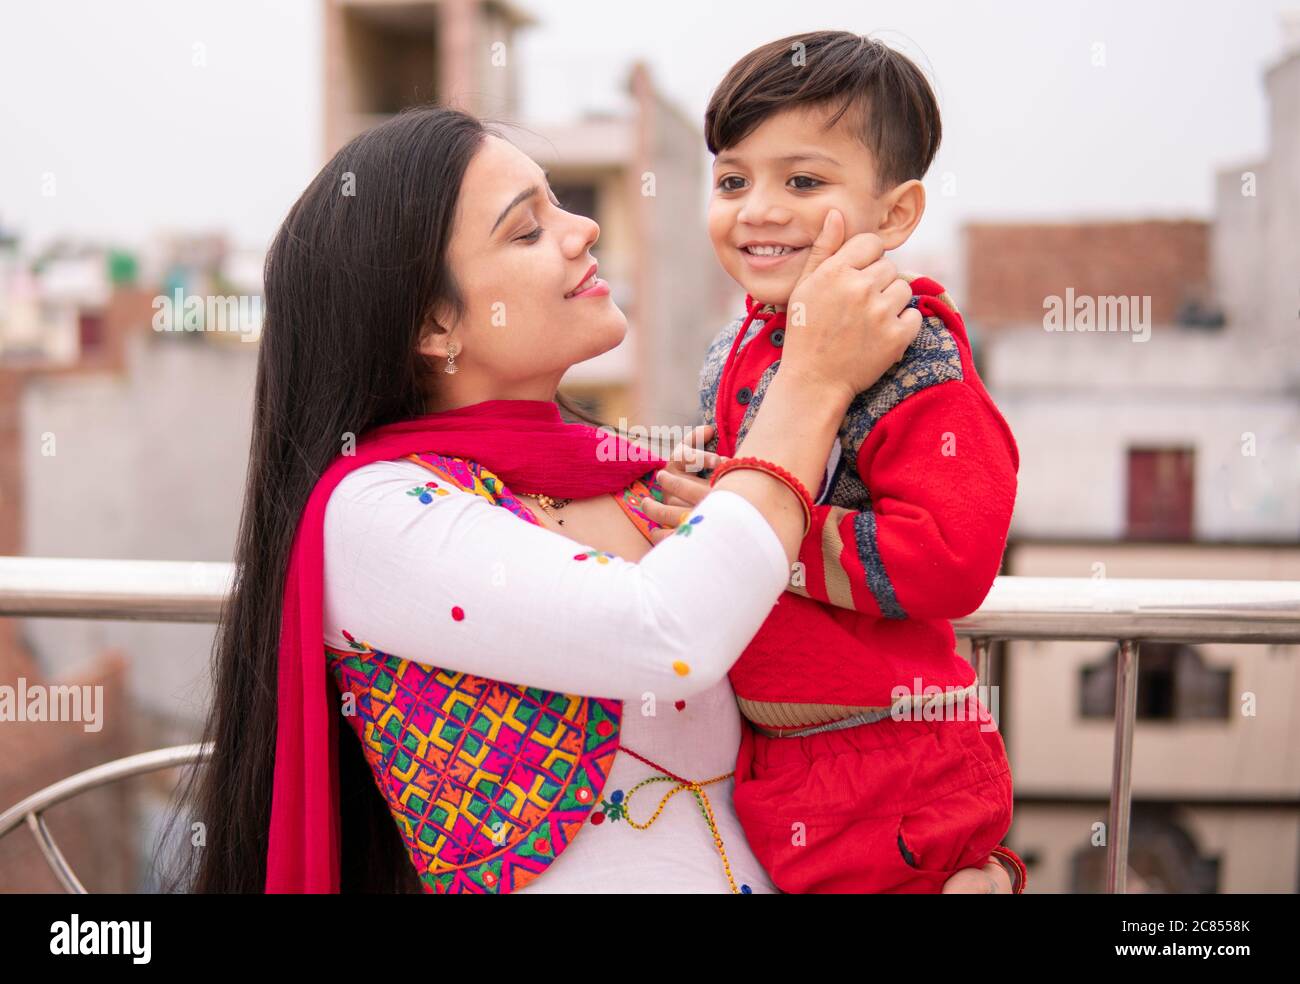 Belle, heureuse indienne jeune mère tirant les joues son petit fils coupé. Elle est debout près de la rampe et passe du temps libre avec son fils. Banque D'Images